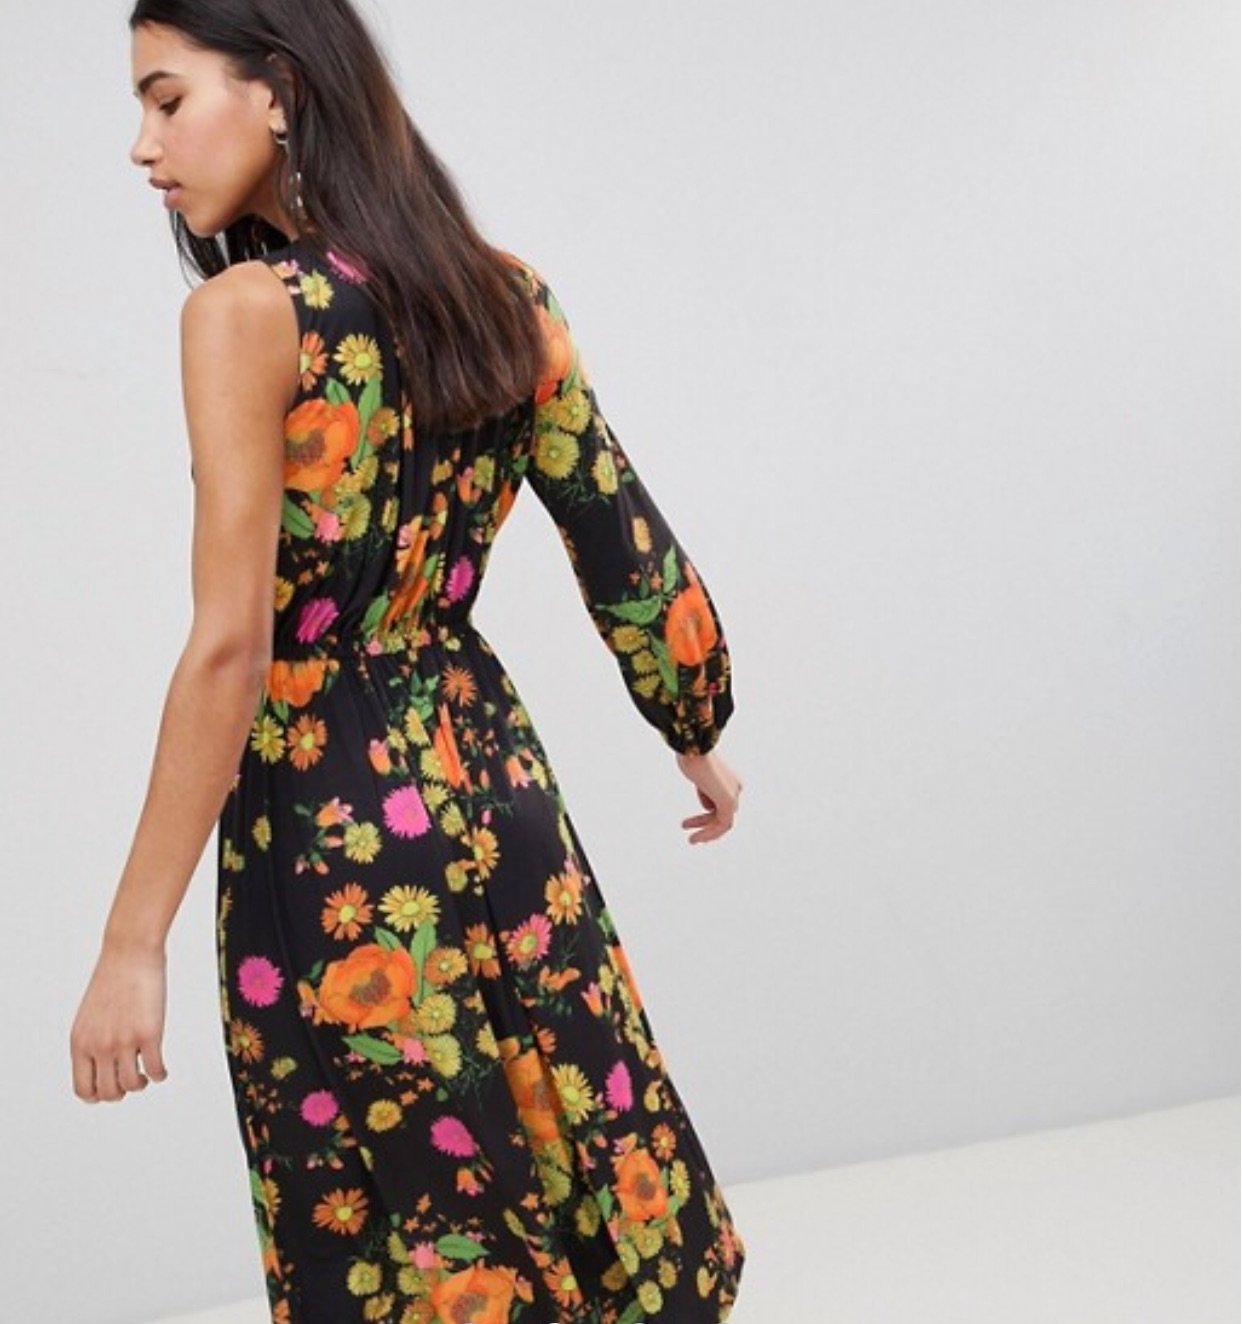 Asos One shoulder Sleeve Floral Dress - chickuwait.com